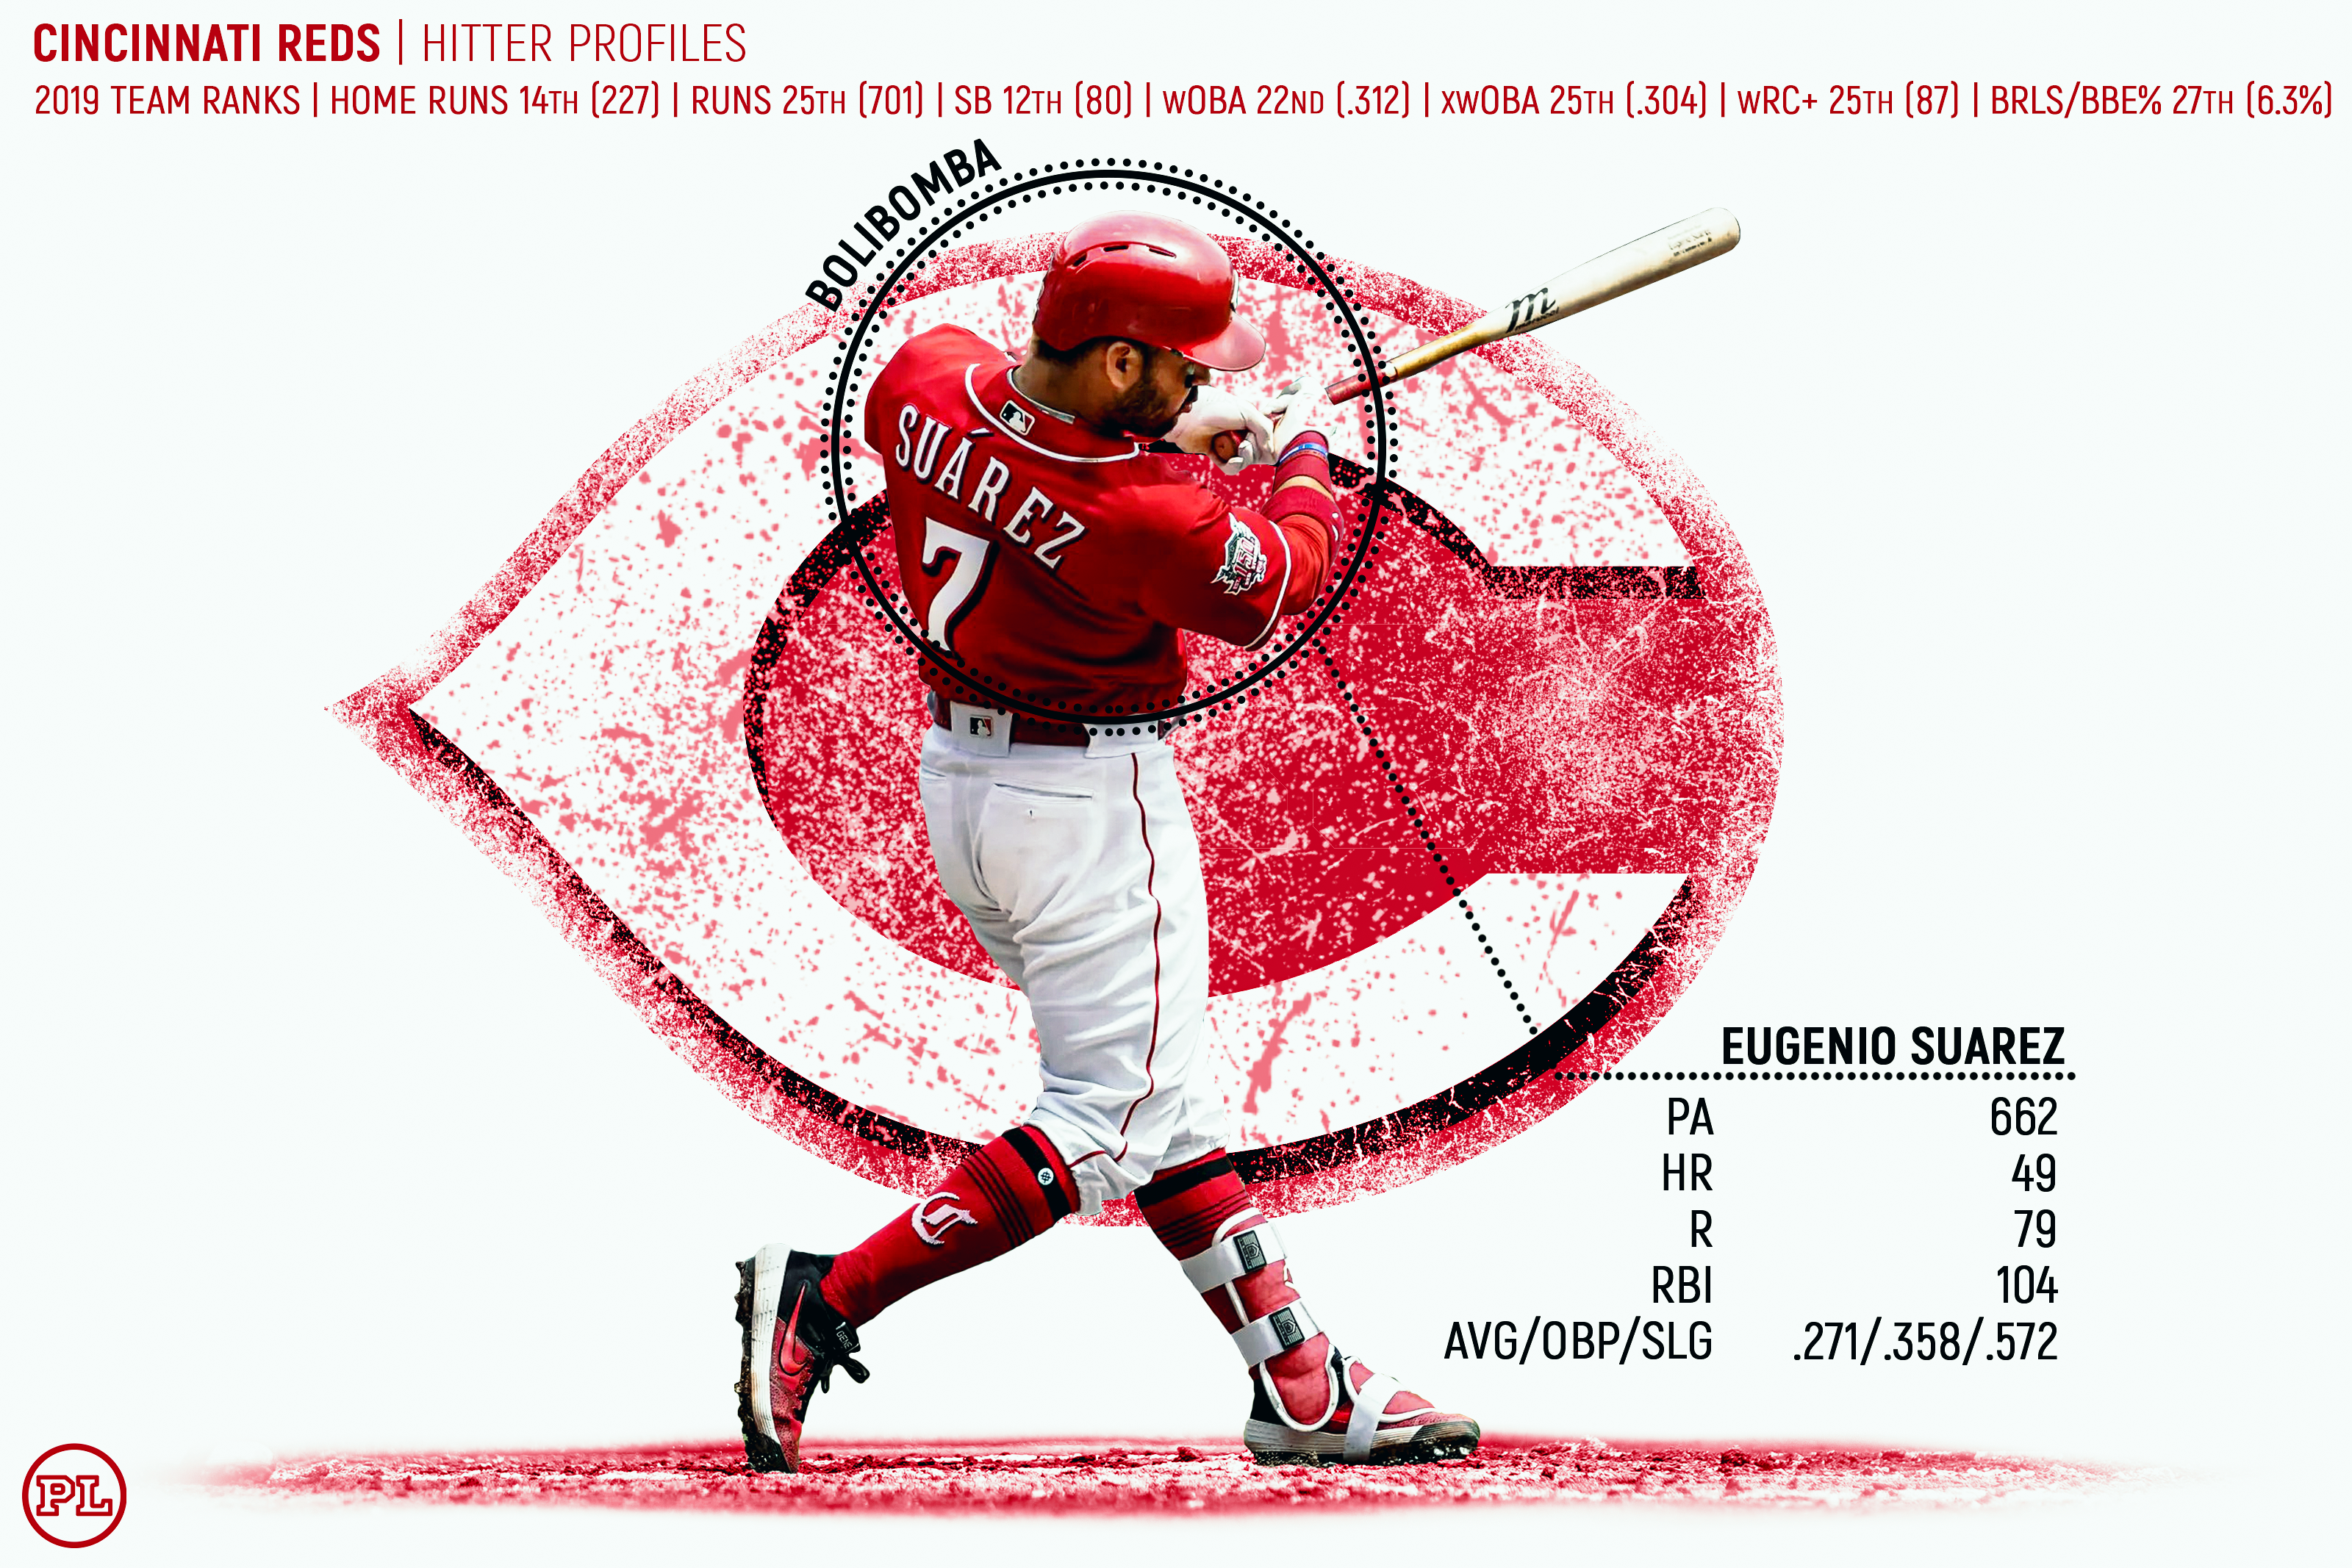 ESPN Stats & Info on X: Derek Dietrich is loving Pirates pitching